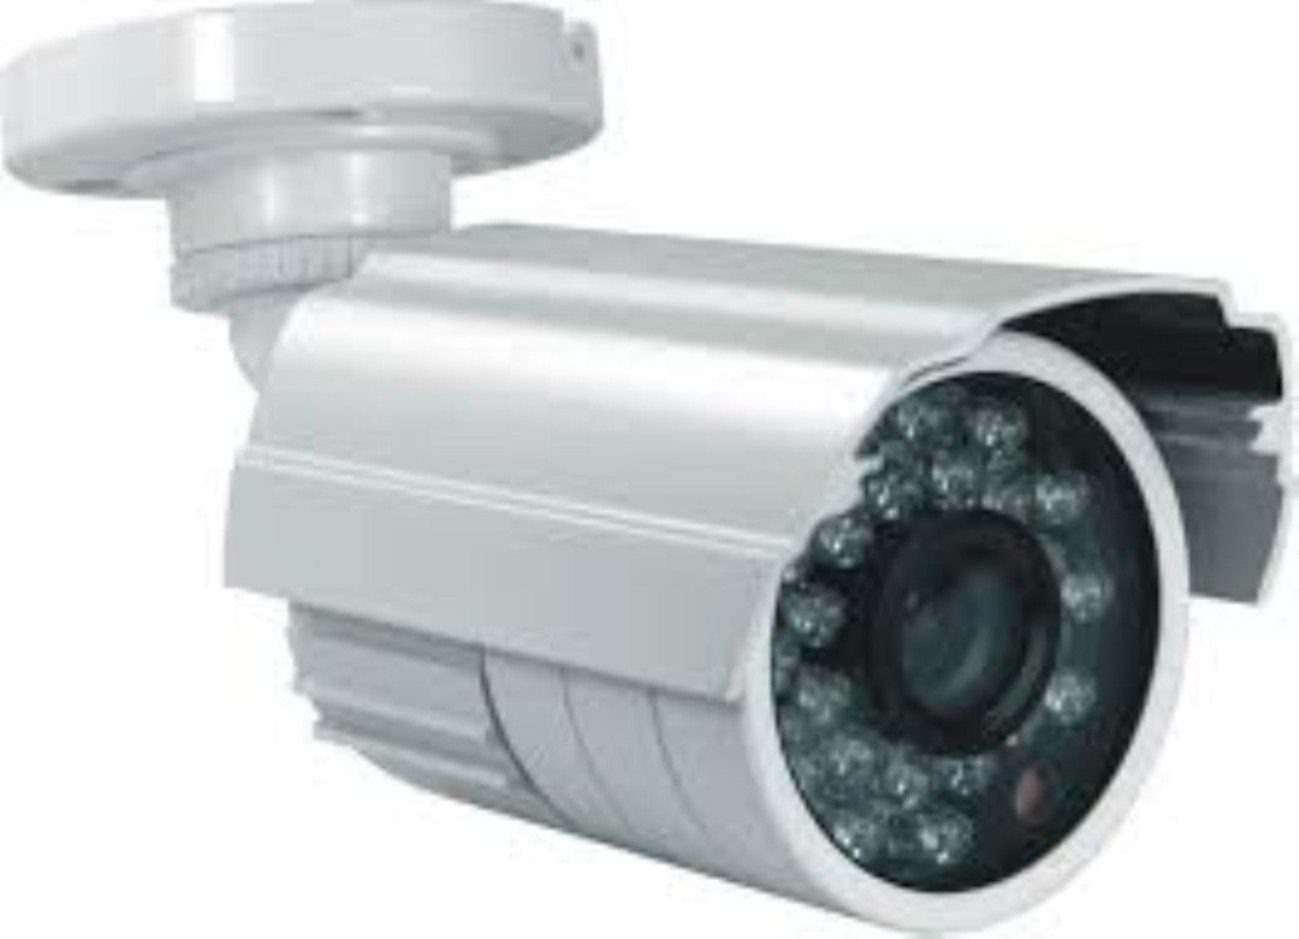 Sony CCTV Camera,cctv camera